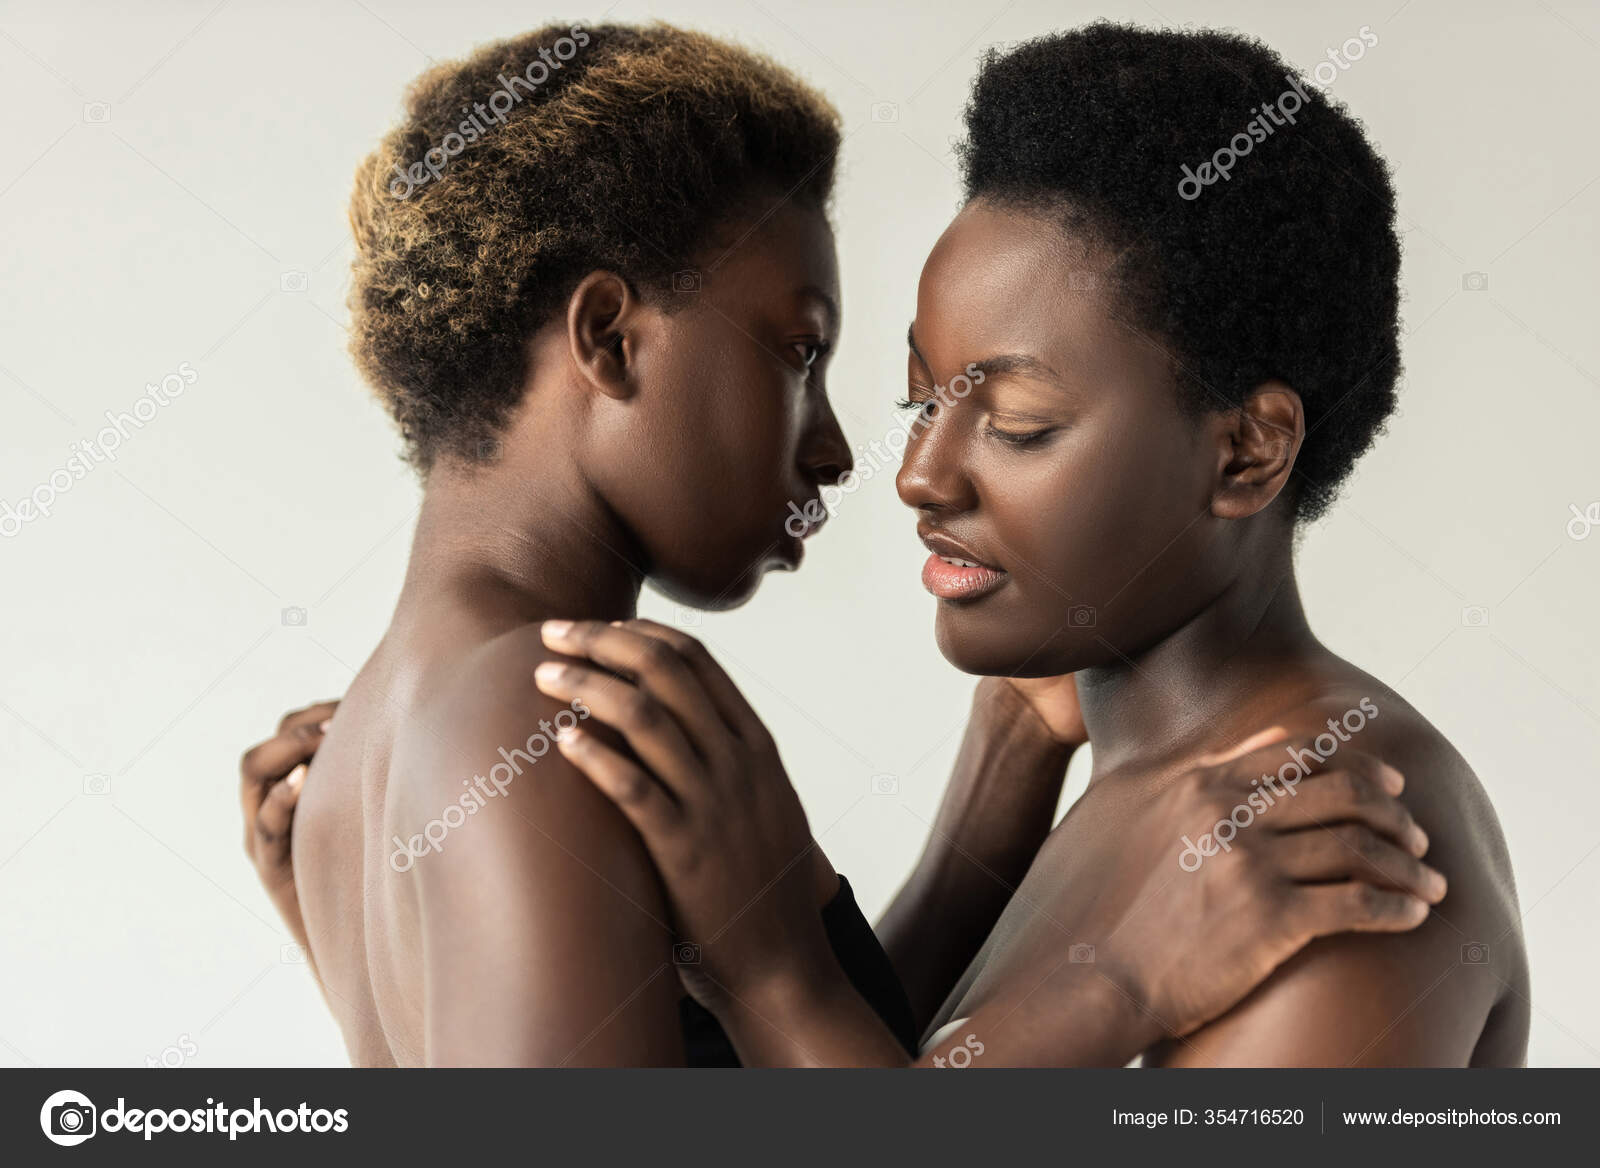 Naked Africans Frauen Bilder Blindfold Sex Porn Pictures